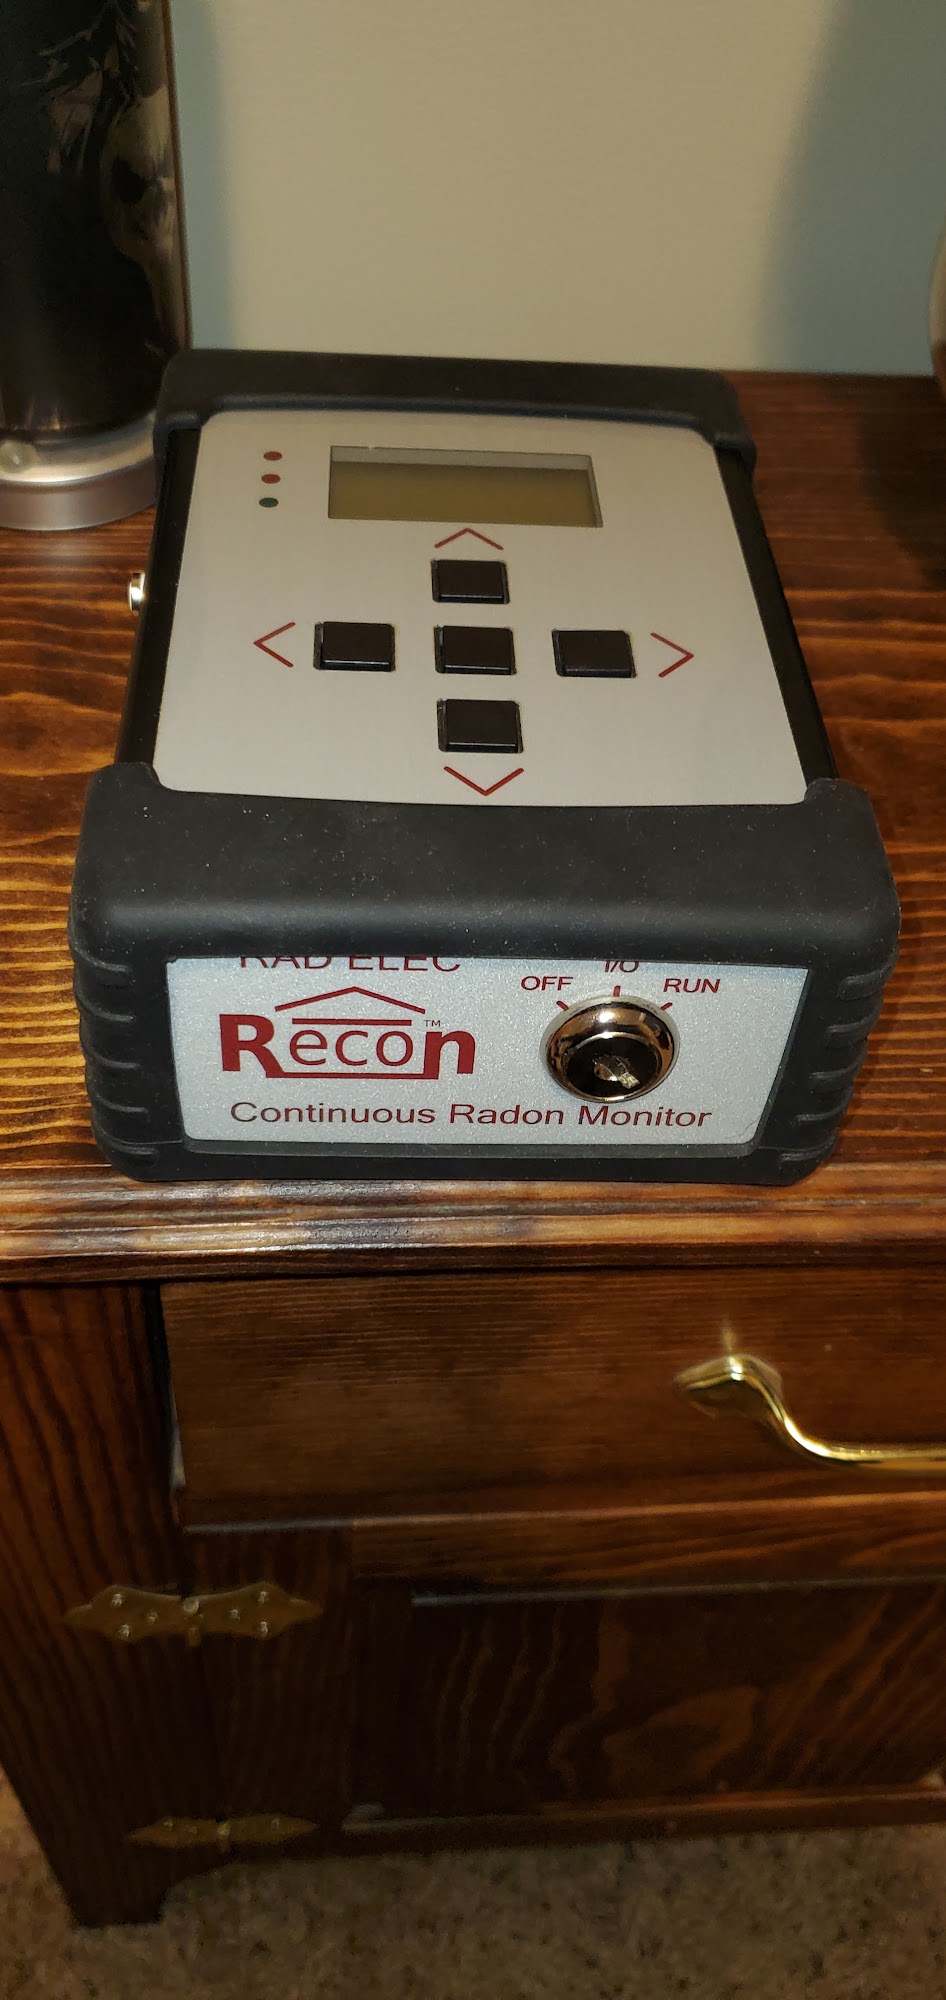 RadonEDU 445 S Essex St, Leland Illinois 60531